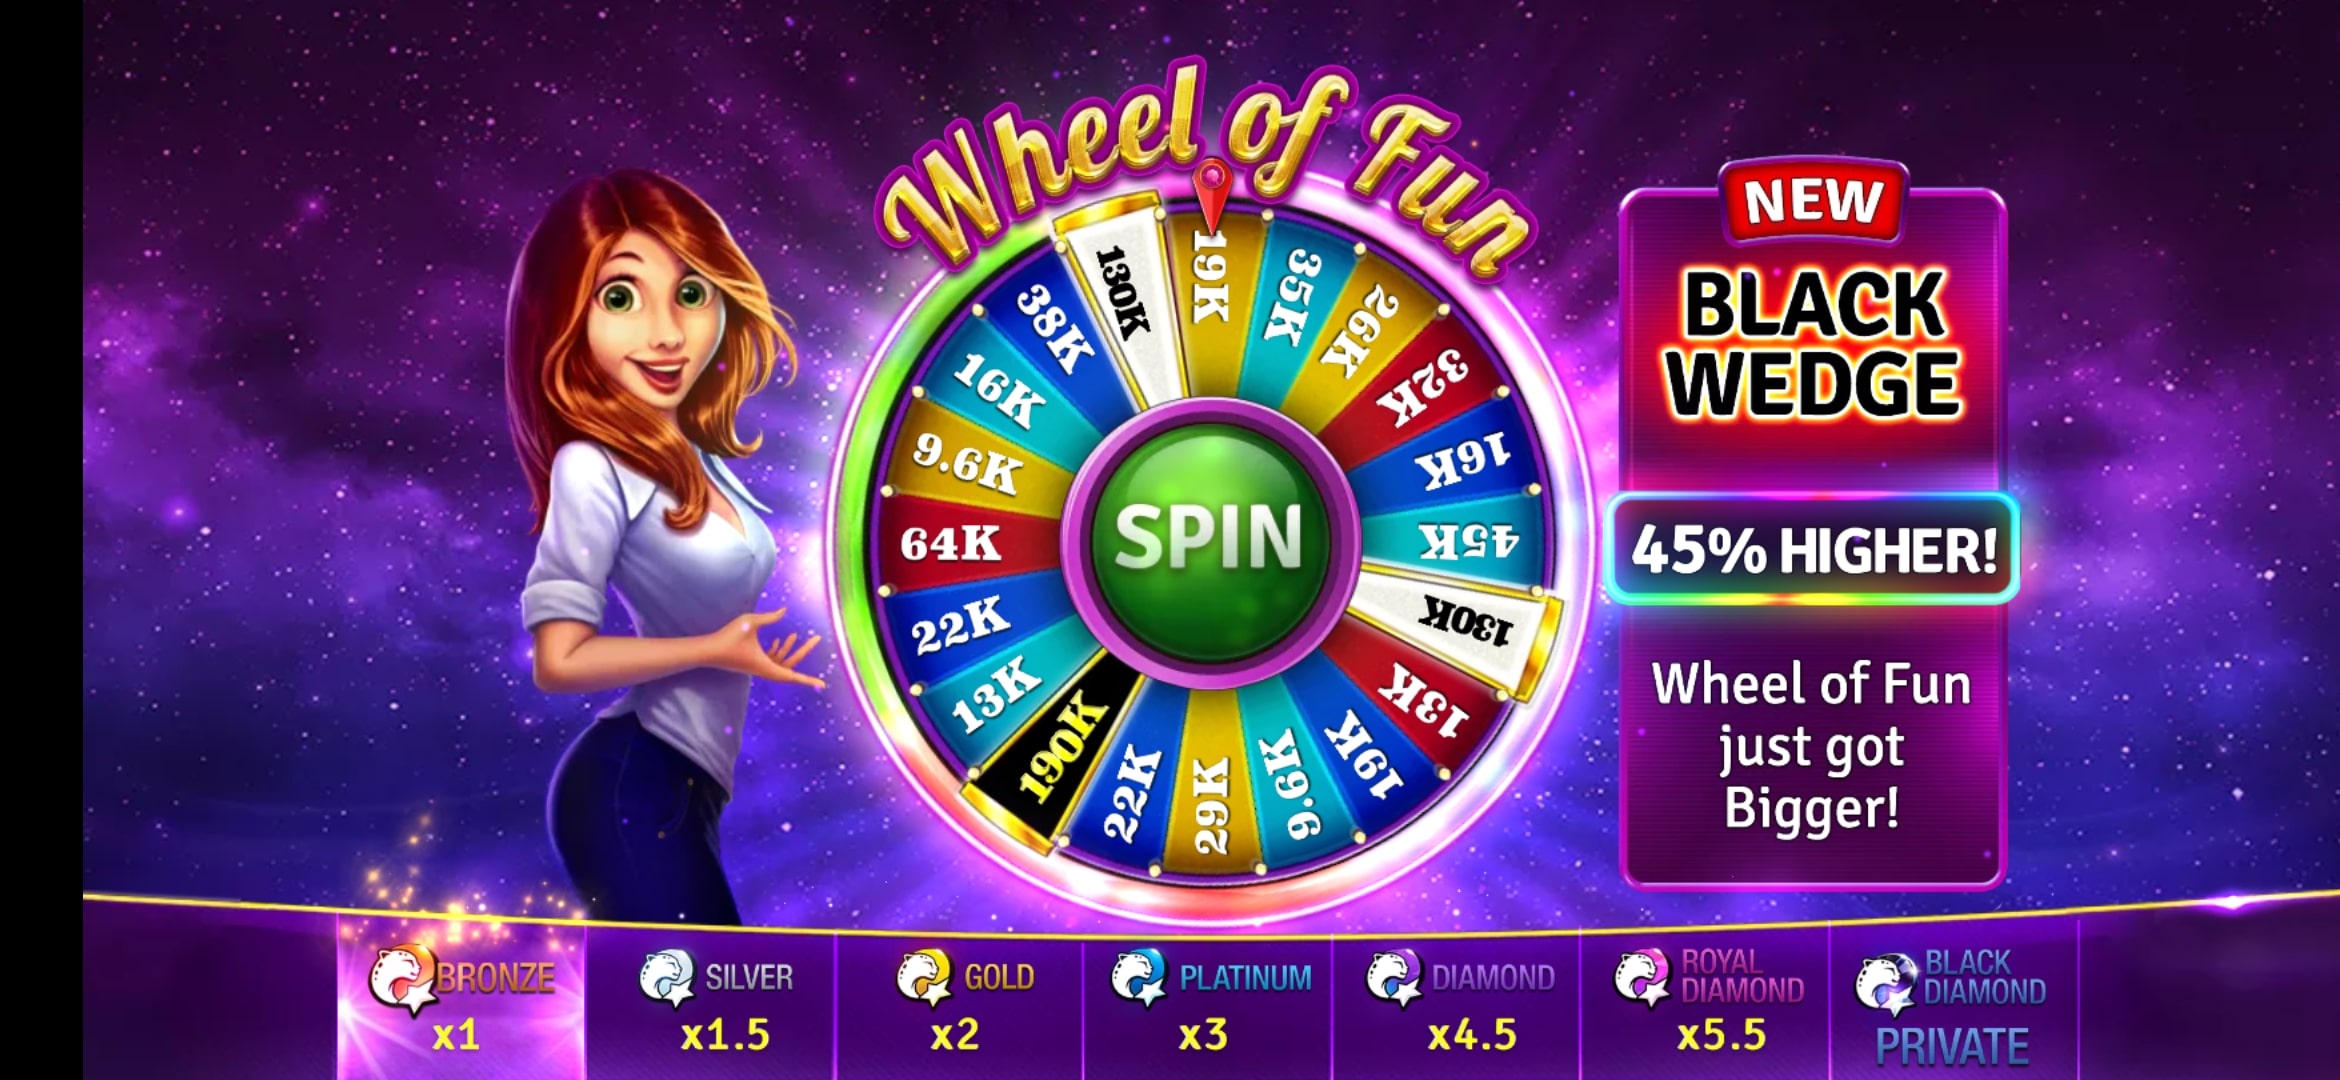 Wheel of Fun